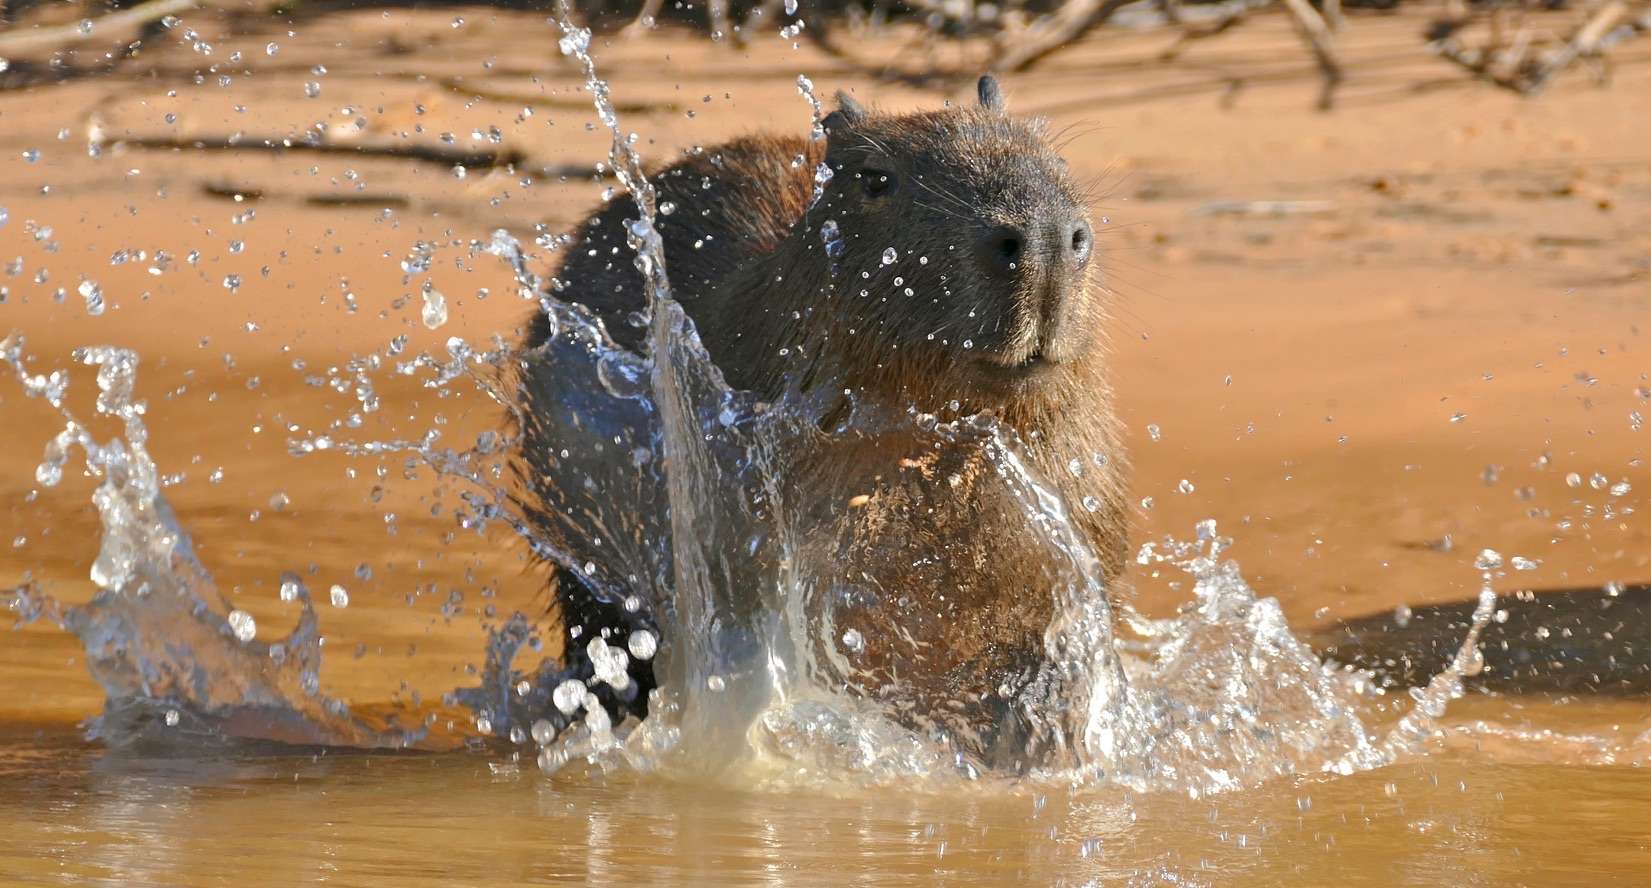 Capybara Splashing